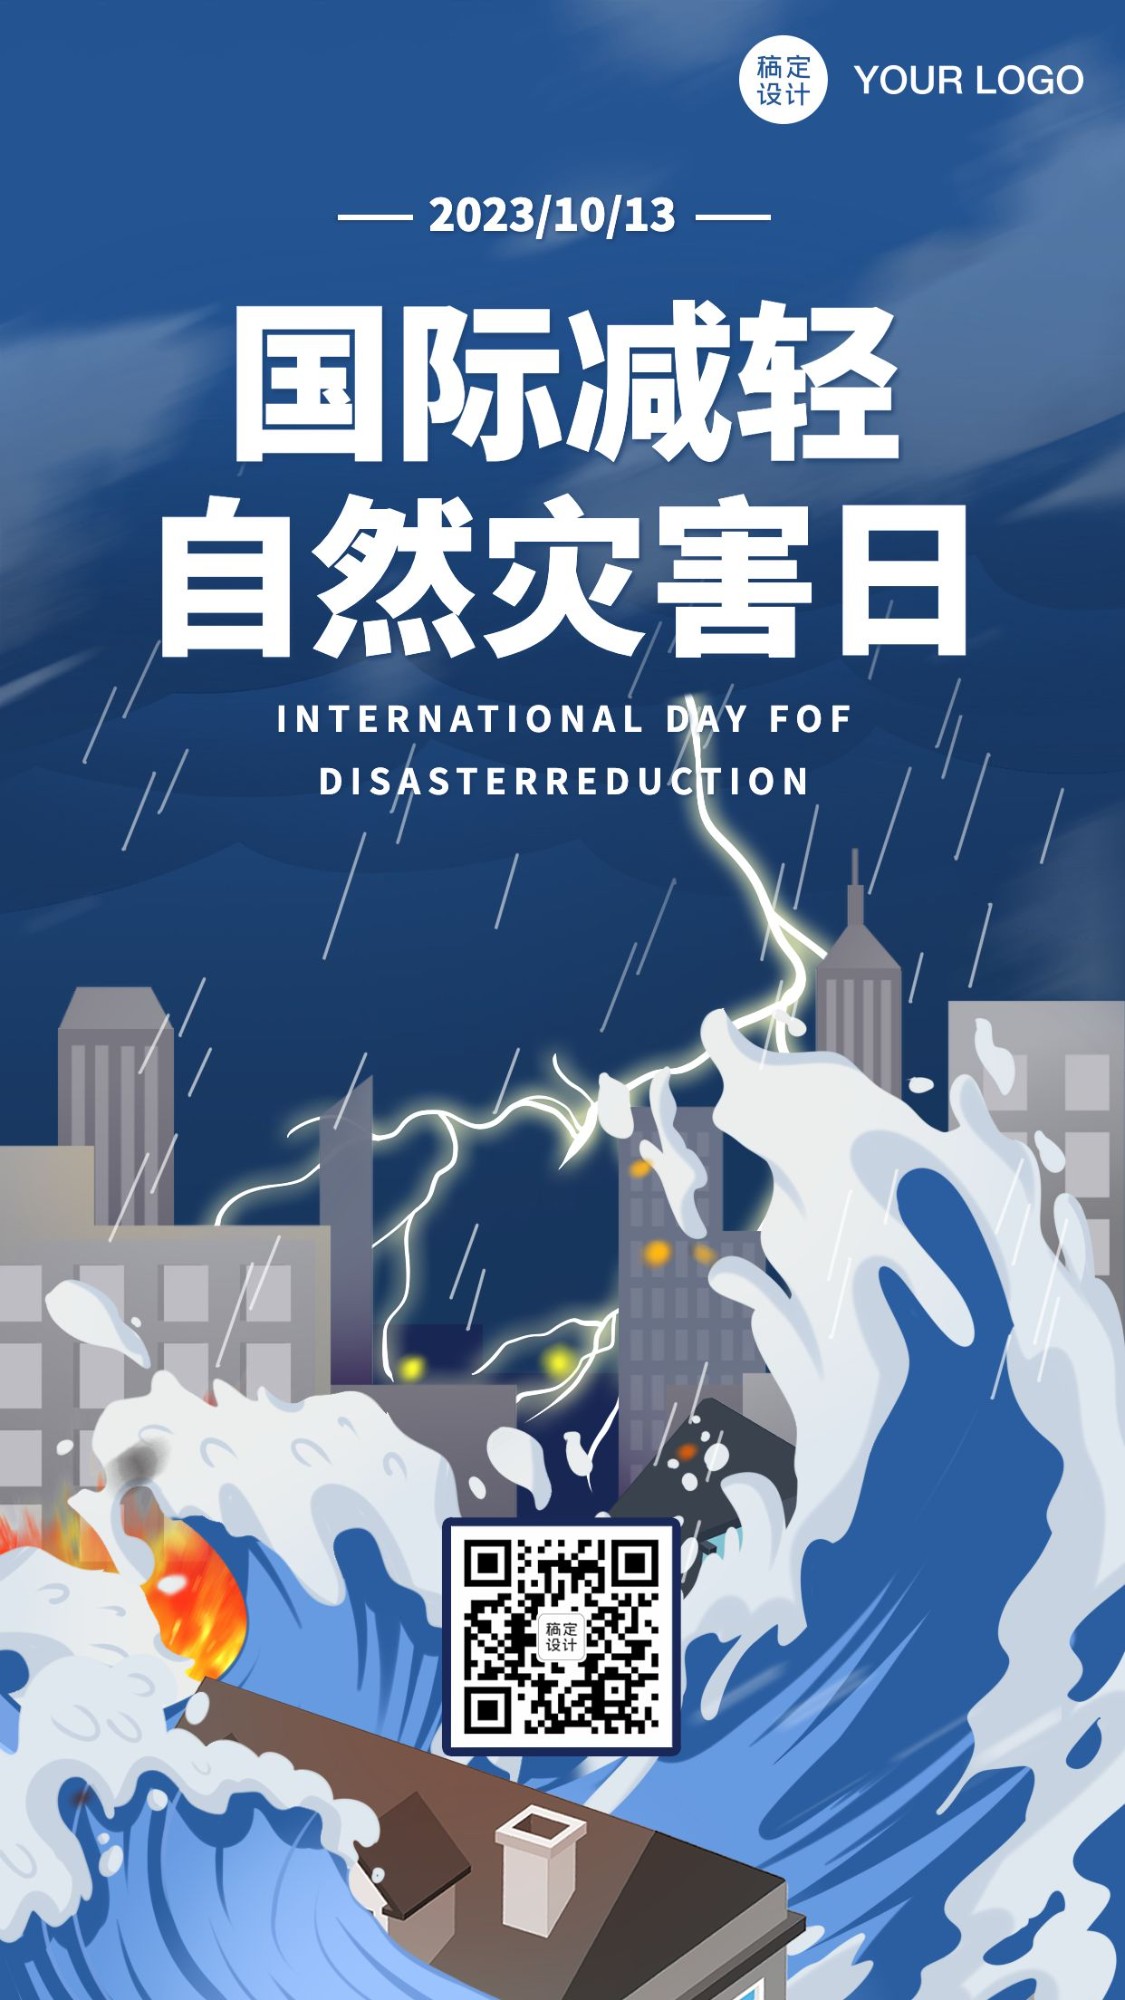 国际减轻自然灾害日插画手机海报预览效果